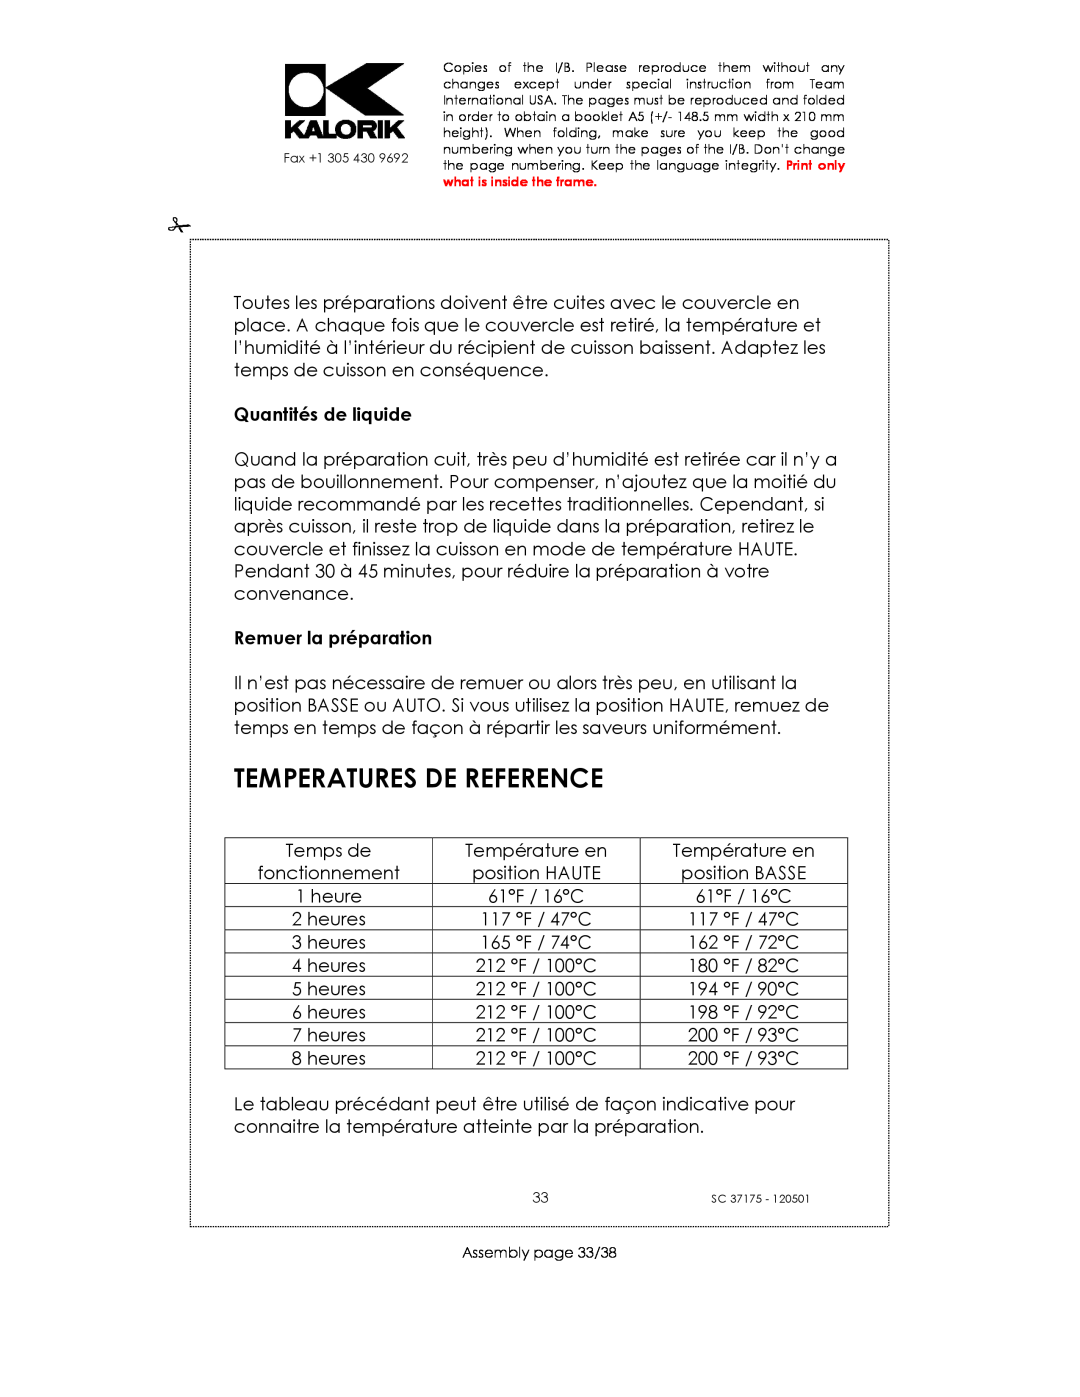 Kalorik SC 37175 manual Temperatures De Reference, Quantités de liquide, Remuer la préparation 